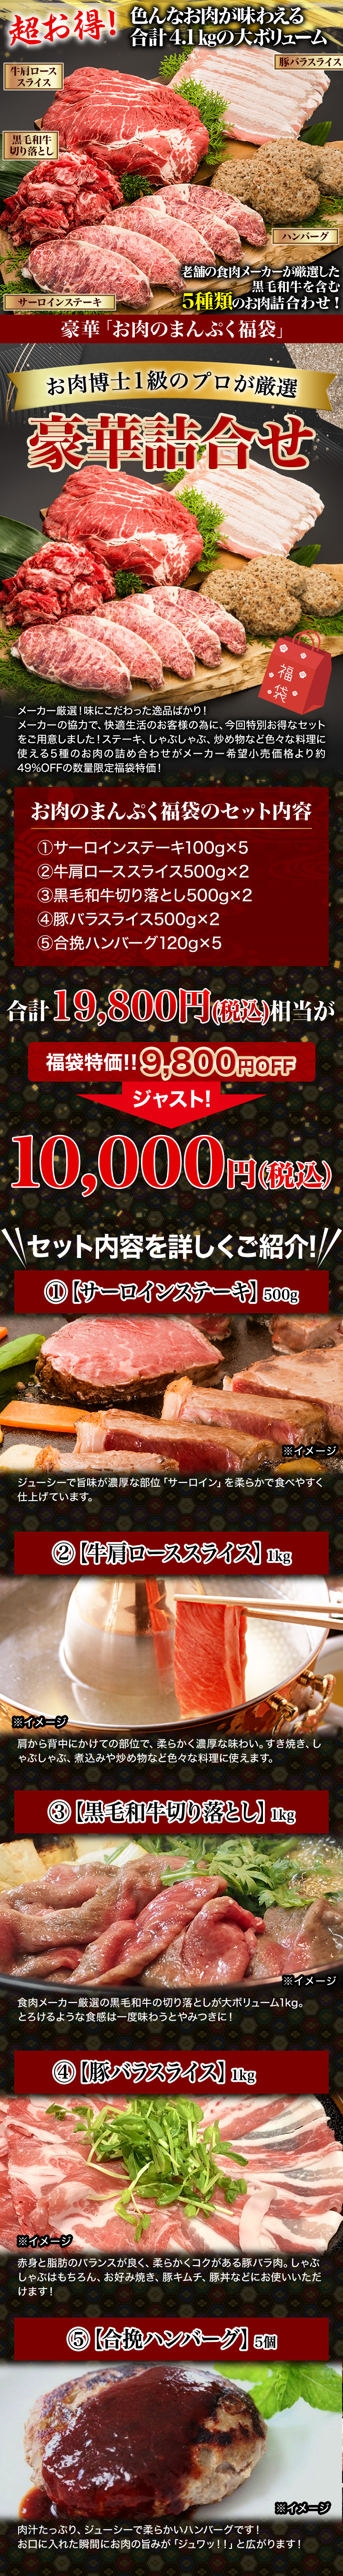 プロが厳選 豪華 お肉のまんぷく福袋 黒毛和牛もたっぷりはいって１万円ポッキリ 快適生活 快適生活